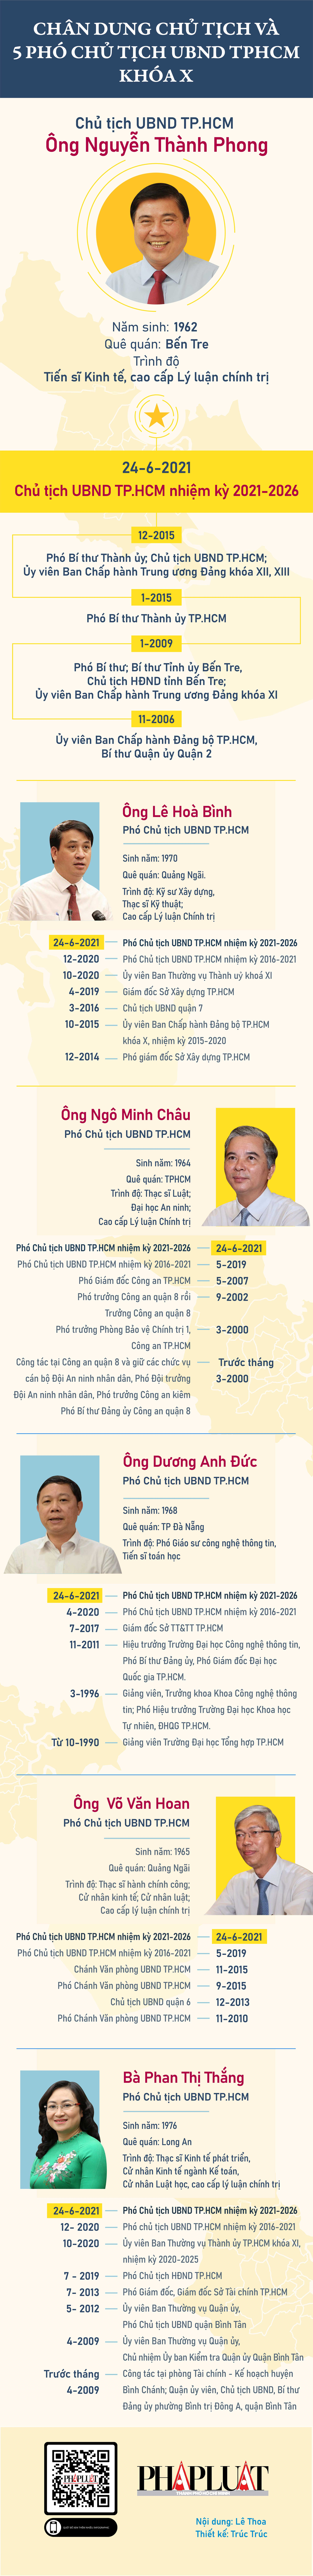 Infographic: Chân dung Chủ tịch và 5 phó chủ tịch UBND TP.HCM nhiệm kỳ 2021-2026 - 1